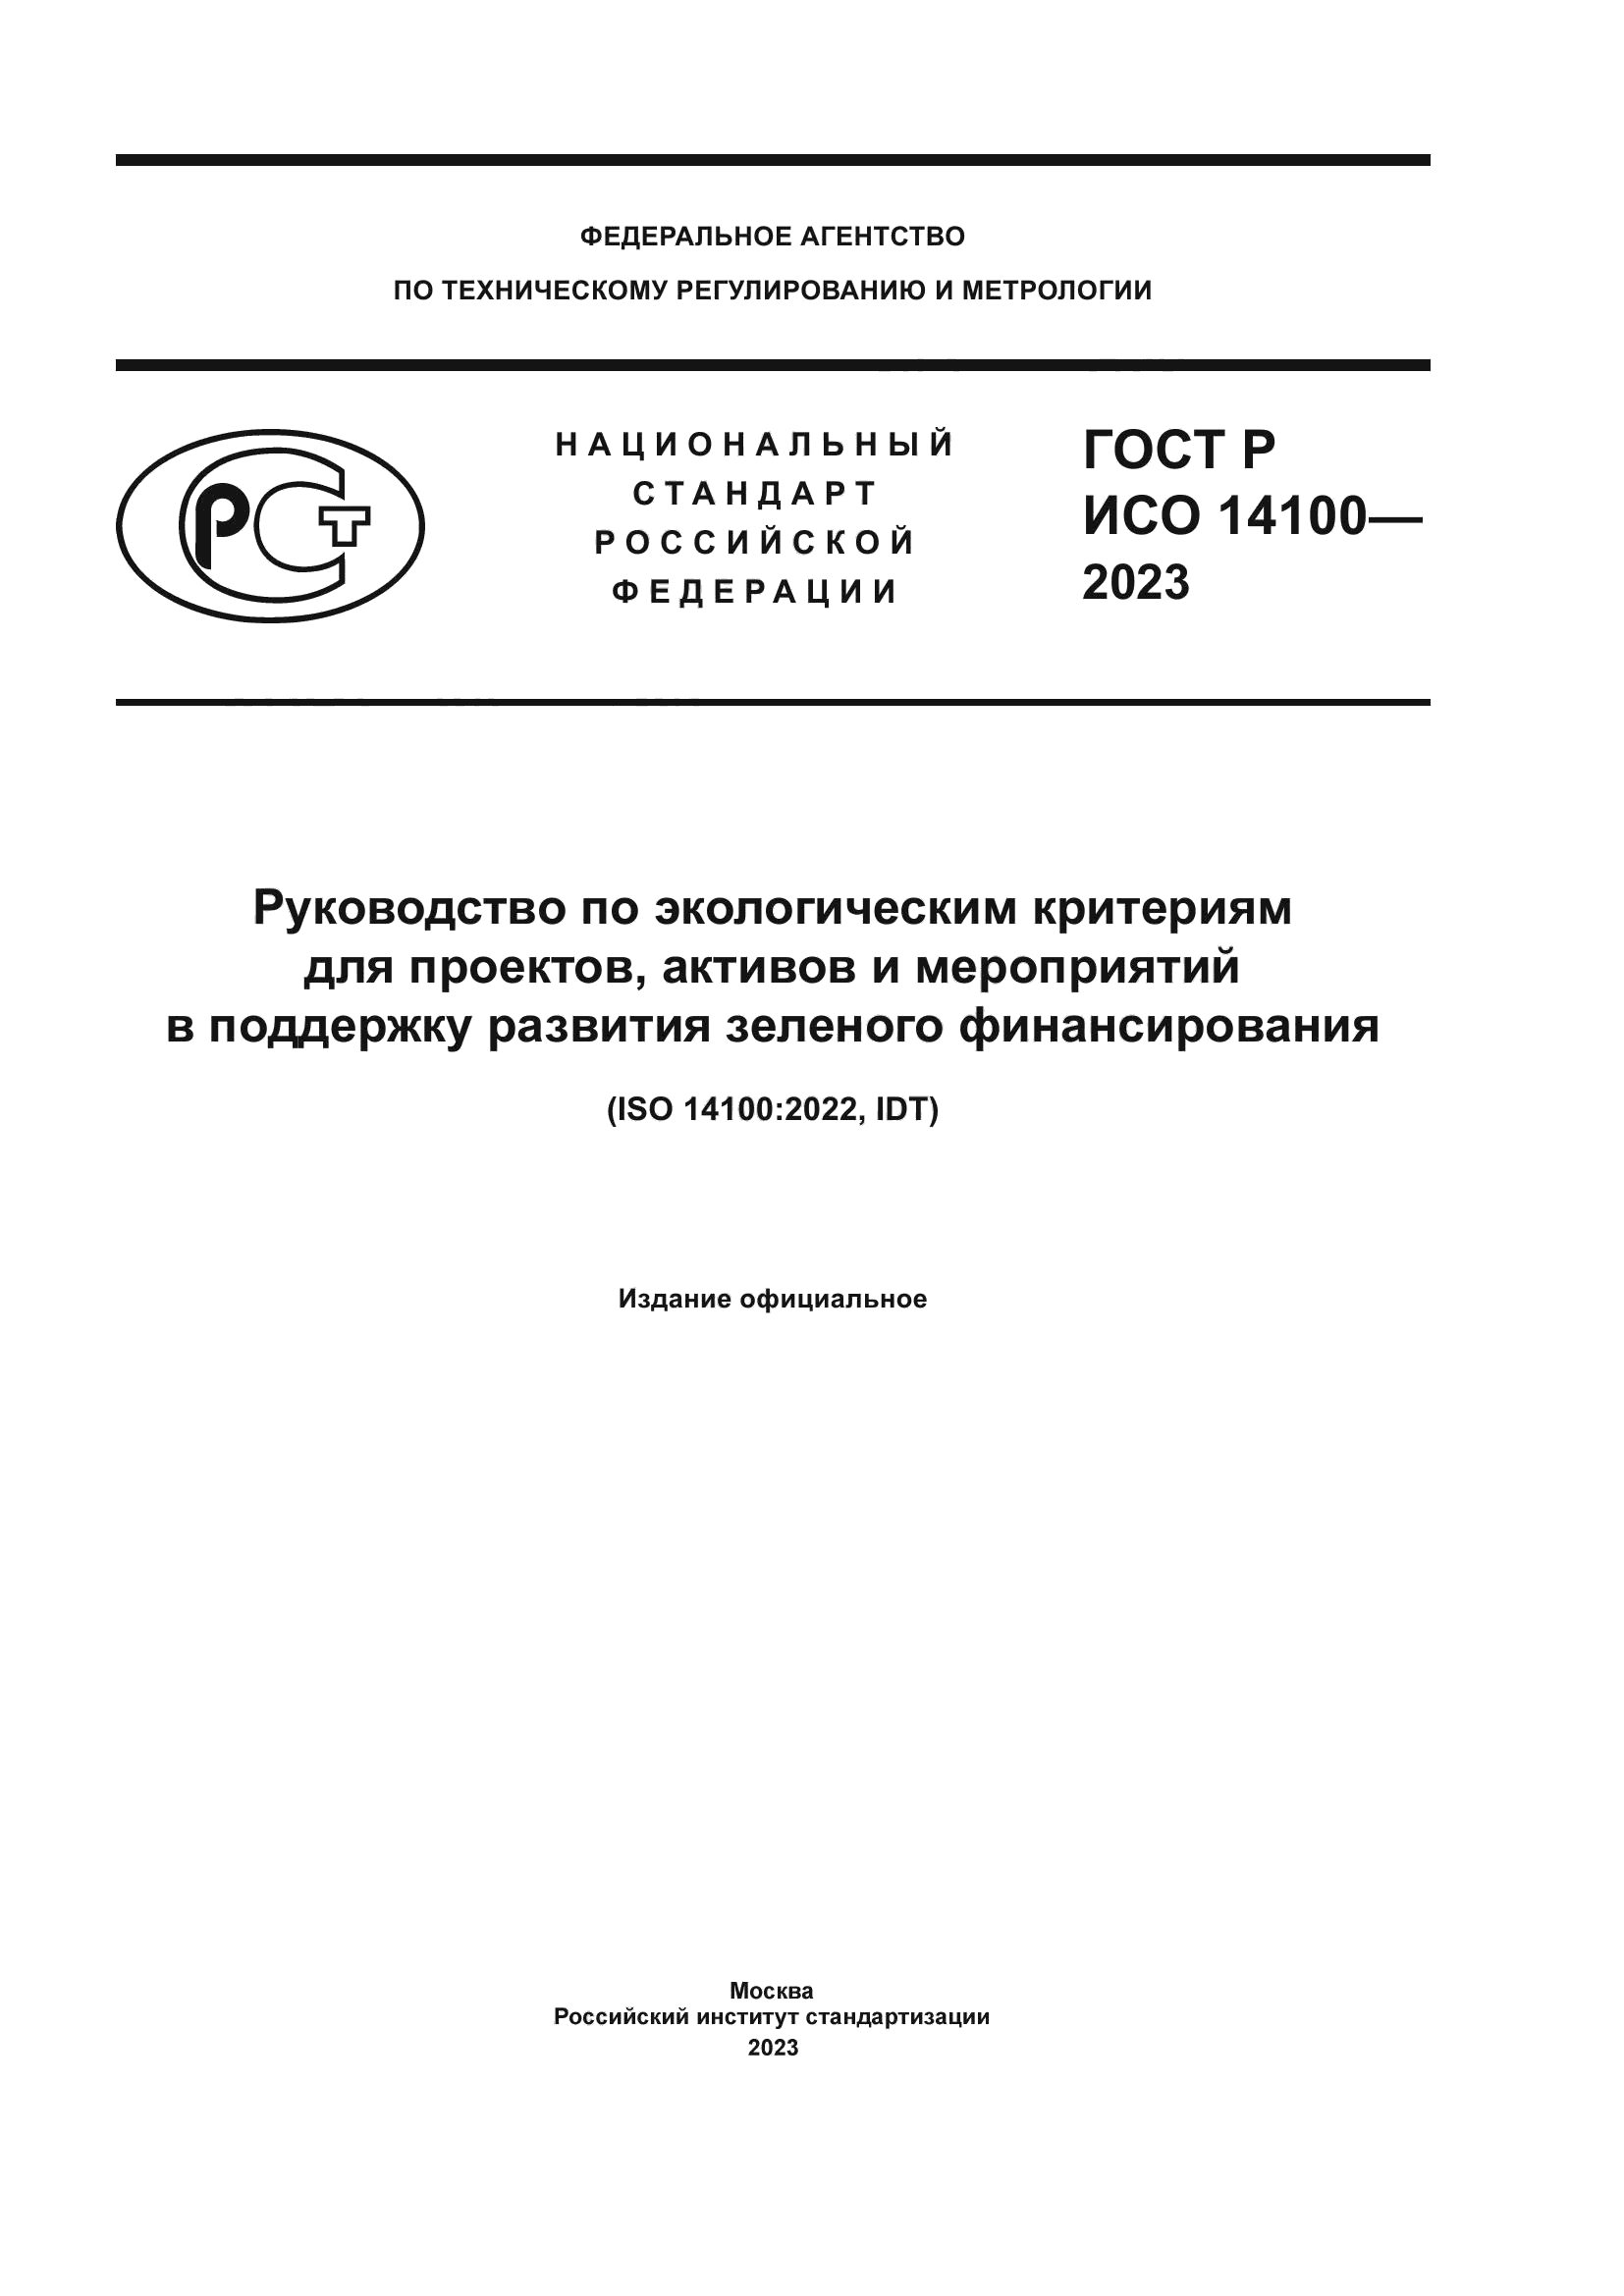 ГОСТ Р ИСО 14100-2023